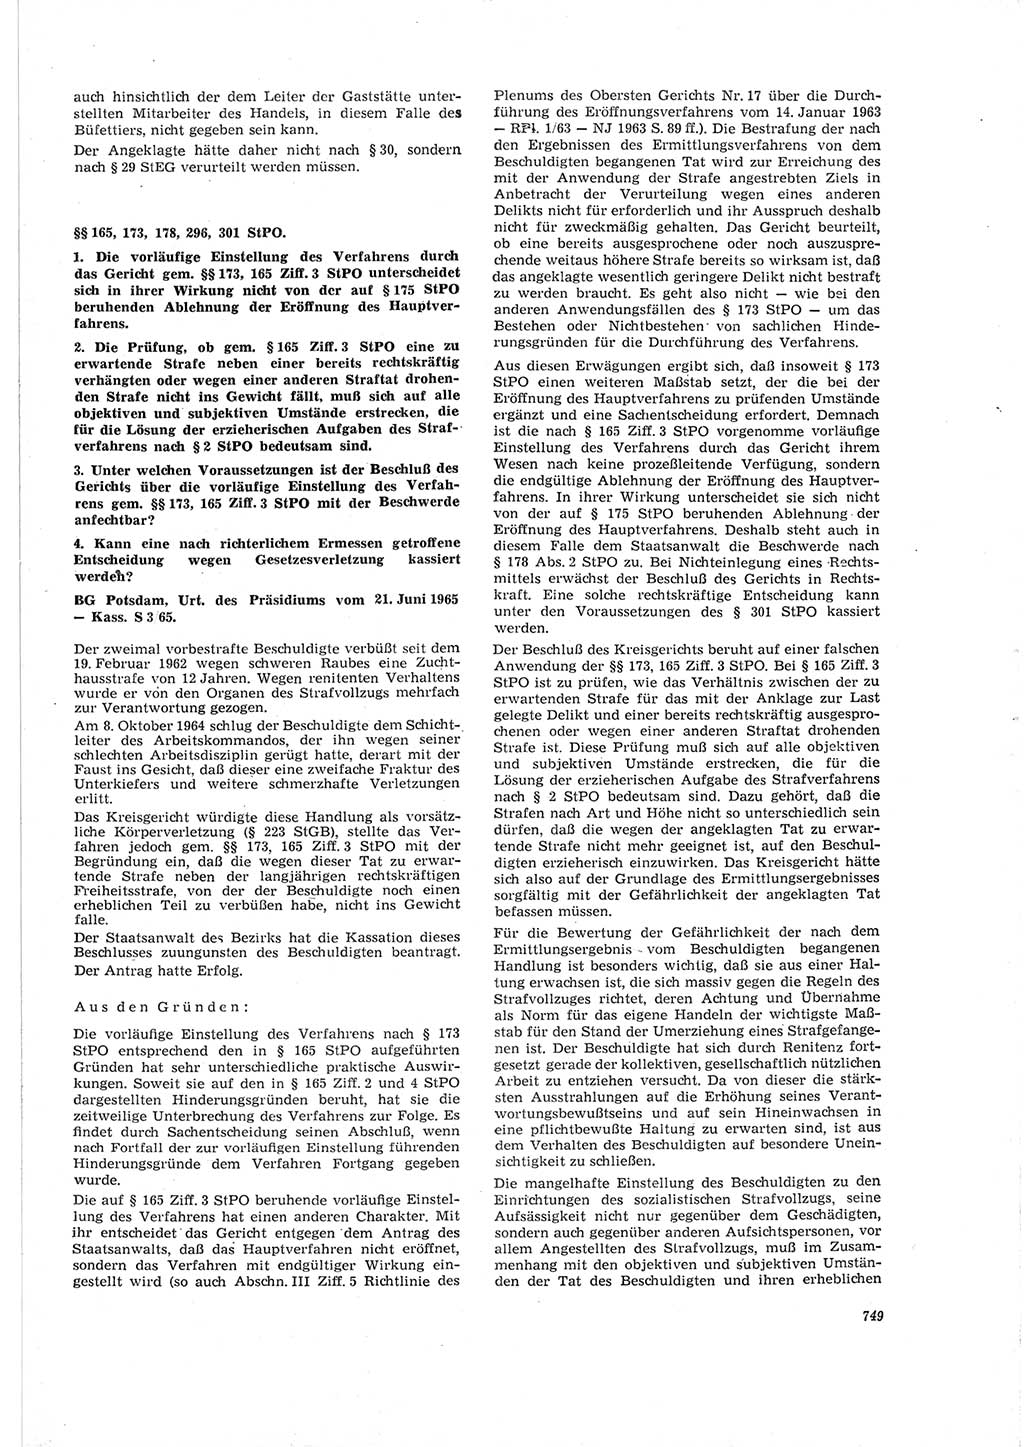 Neue Justiz (NJ), Zeitschrift für Recht und Rechtswissenschaft [Deutsche Demokratische Republik (DDR)], 19. Jahrgang 1965, Seite 749 (NJ DDR 1965, S. 749)